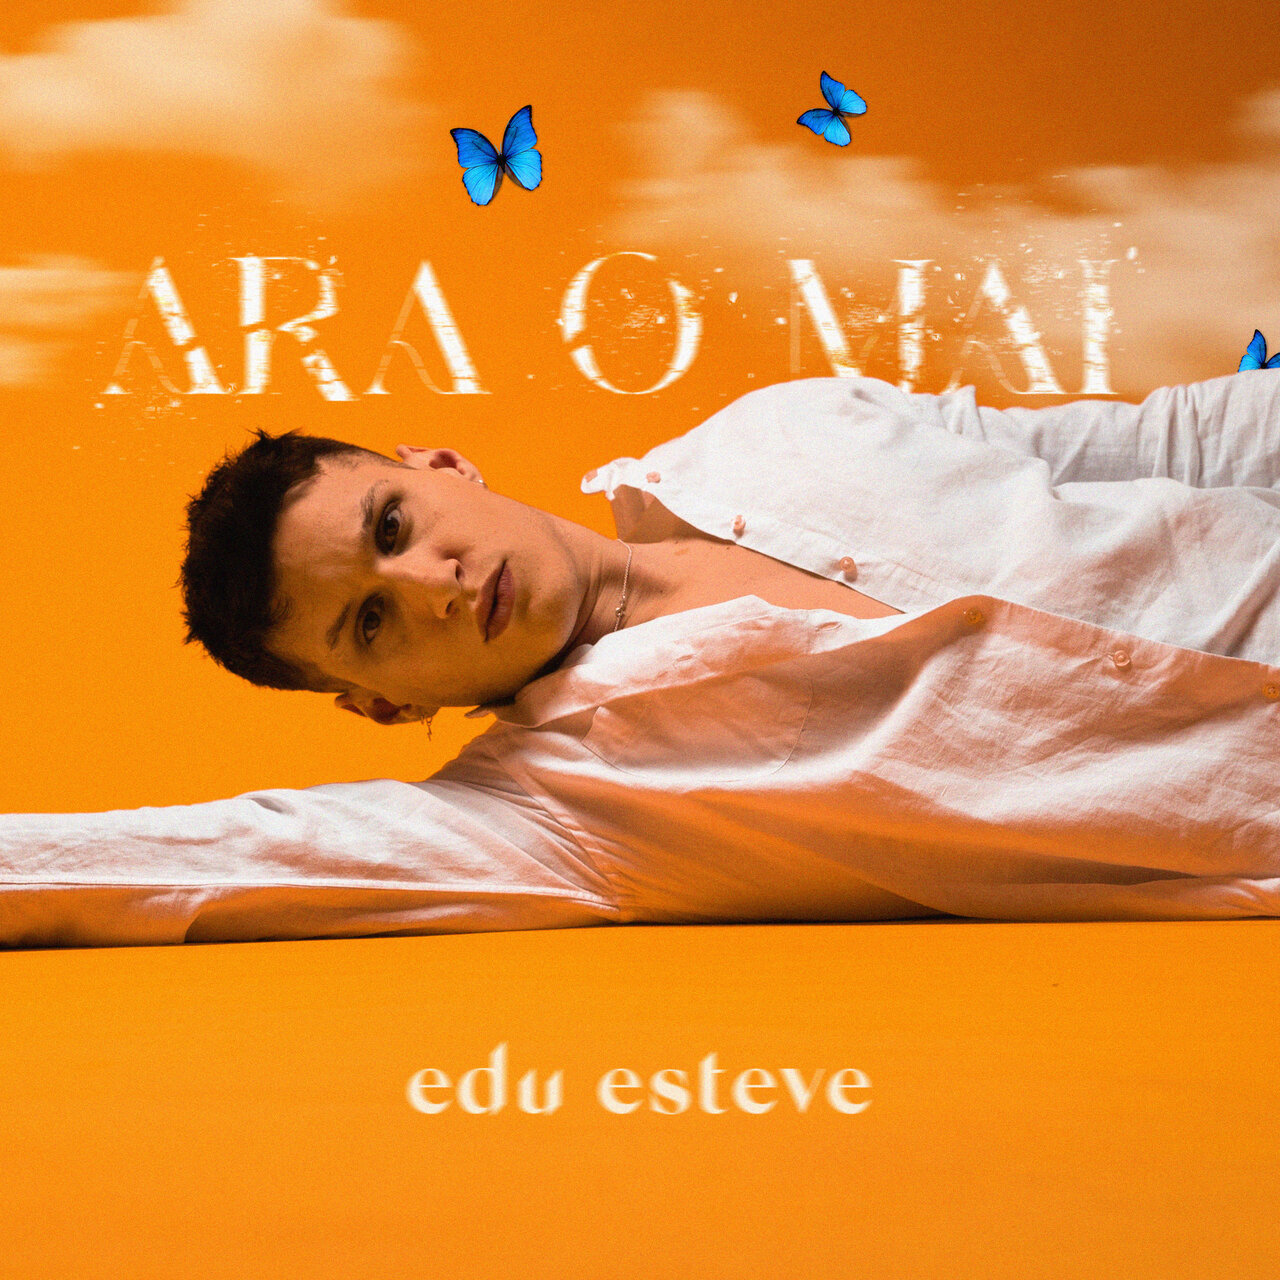 Edu Esteve ARA O MAI cover artwork